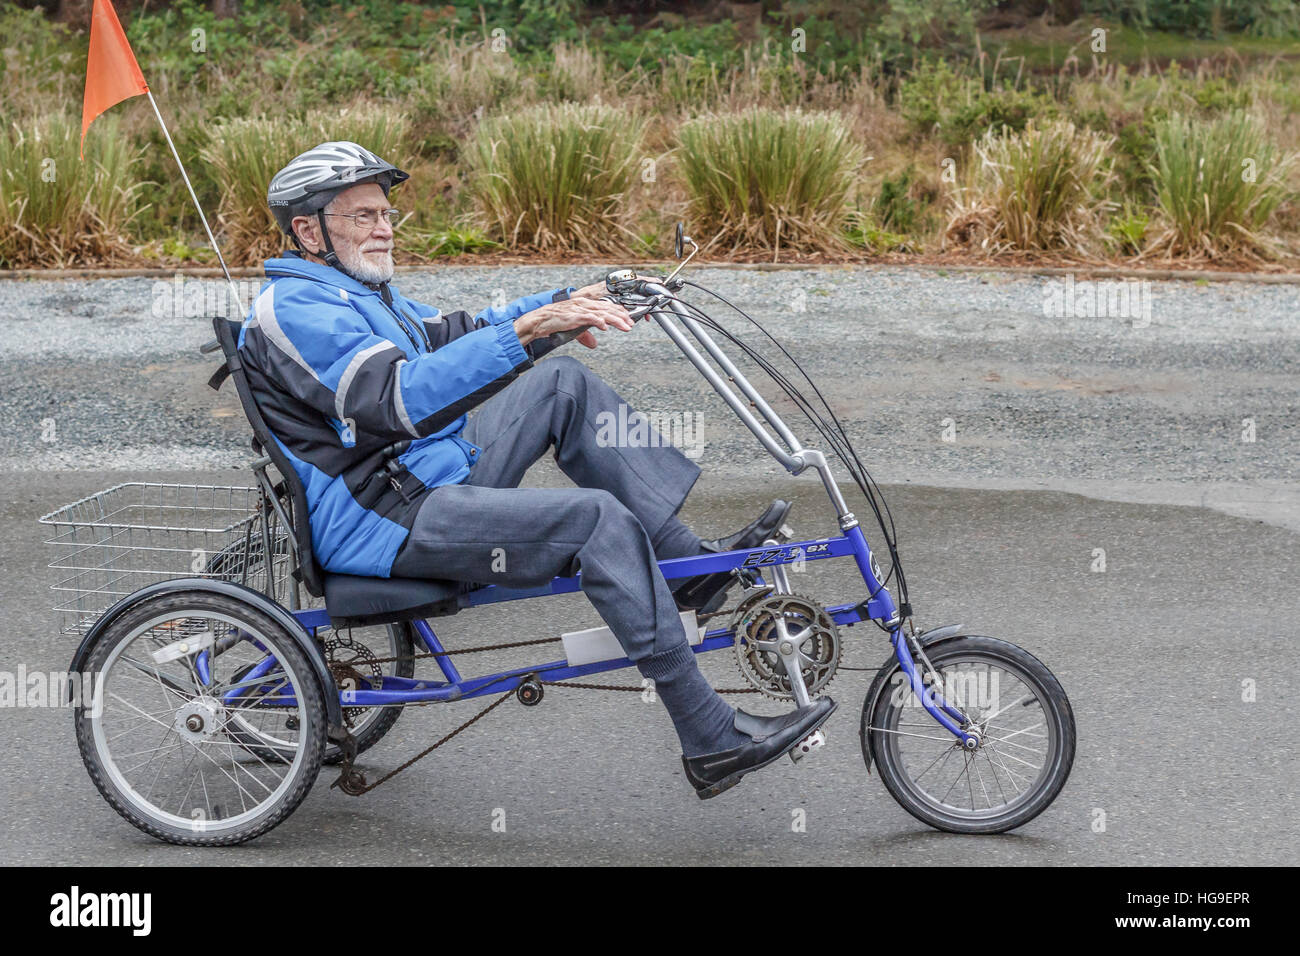 Ein lächelndes, älterer Mann, Alter 94, Pedale ein liegedreirad entlang einer Auffahrt, mit Helm, Fahne und anderen Sicherheitssystemen ausgestattet. Stockfoto